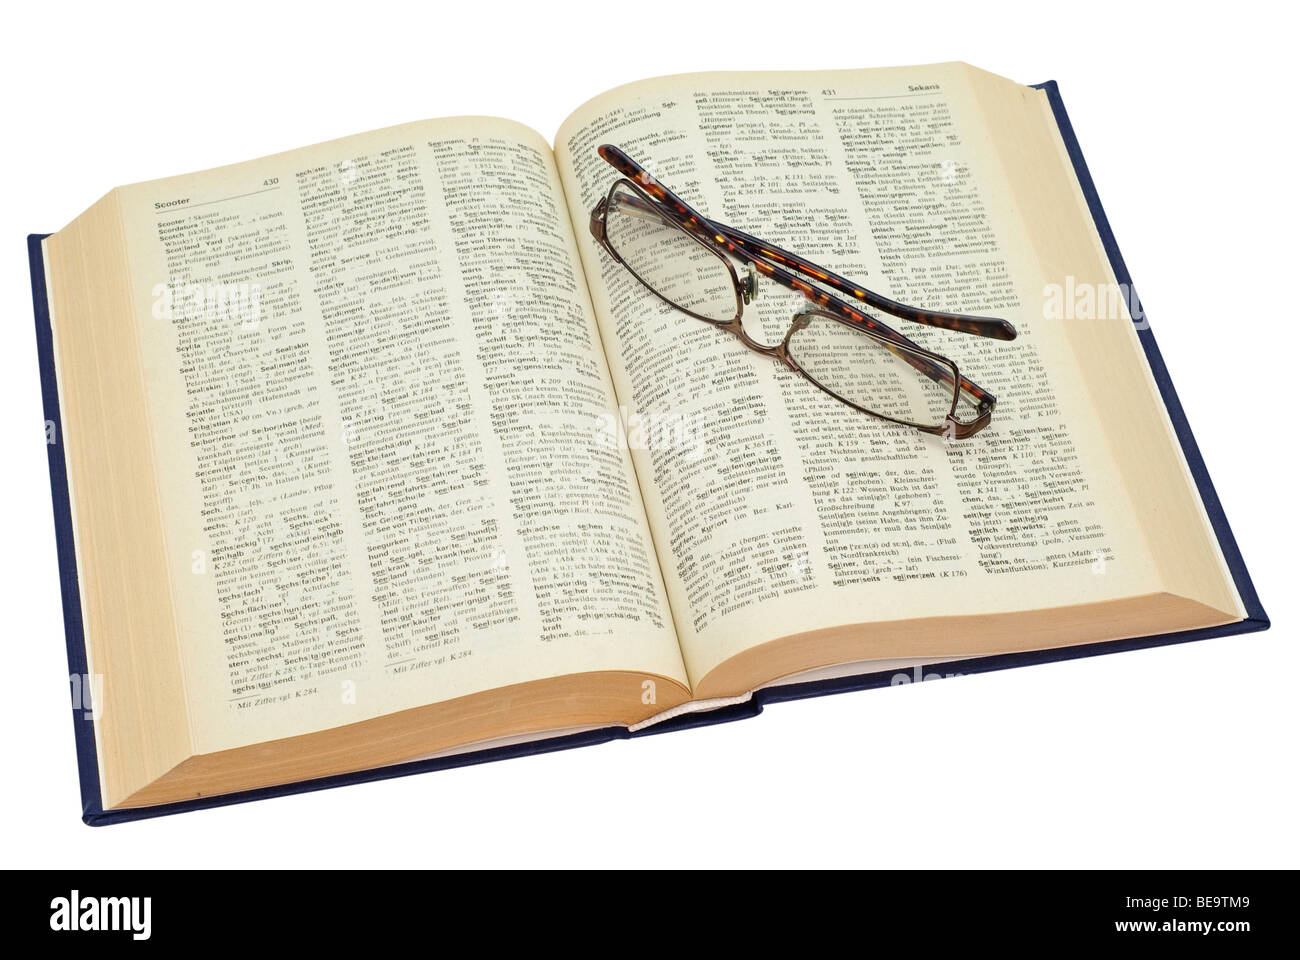 Vieux livre jauni ouverte avec des lunettes, enregistré avec clipping path Banque D'Images